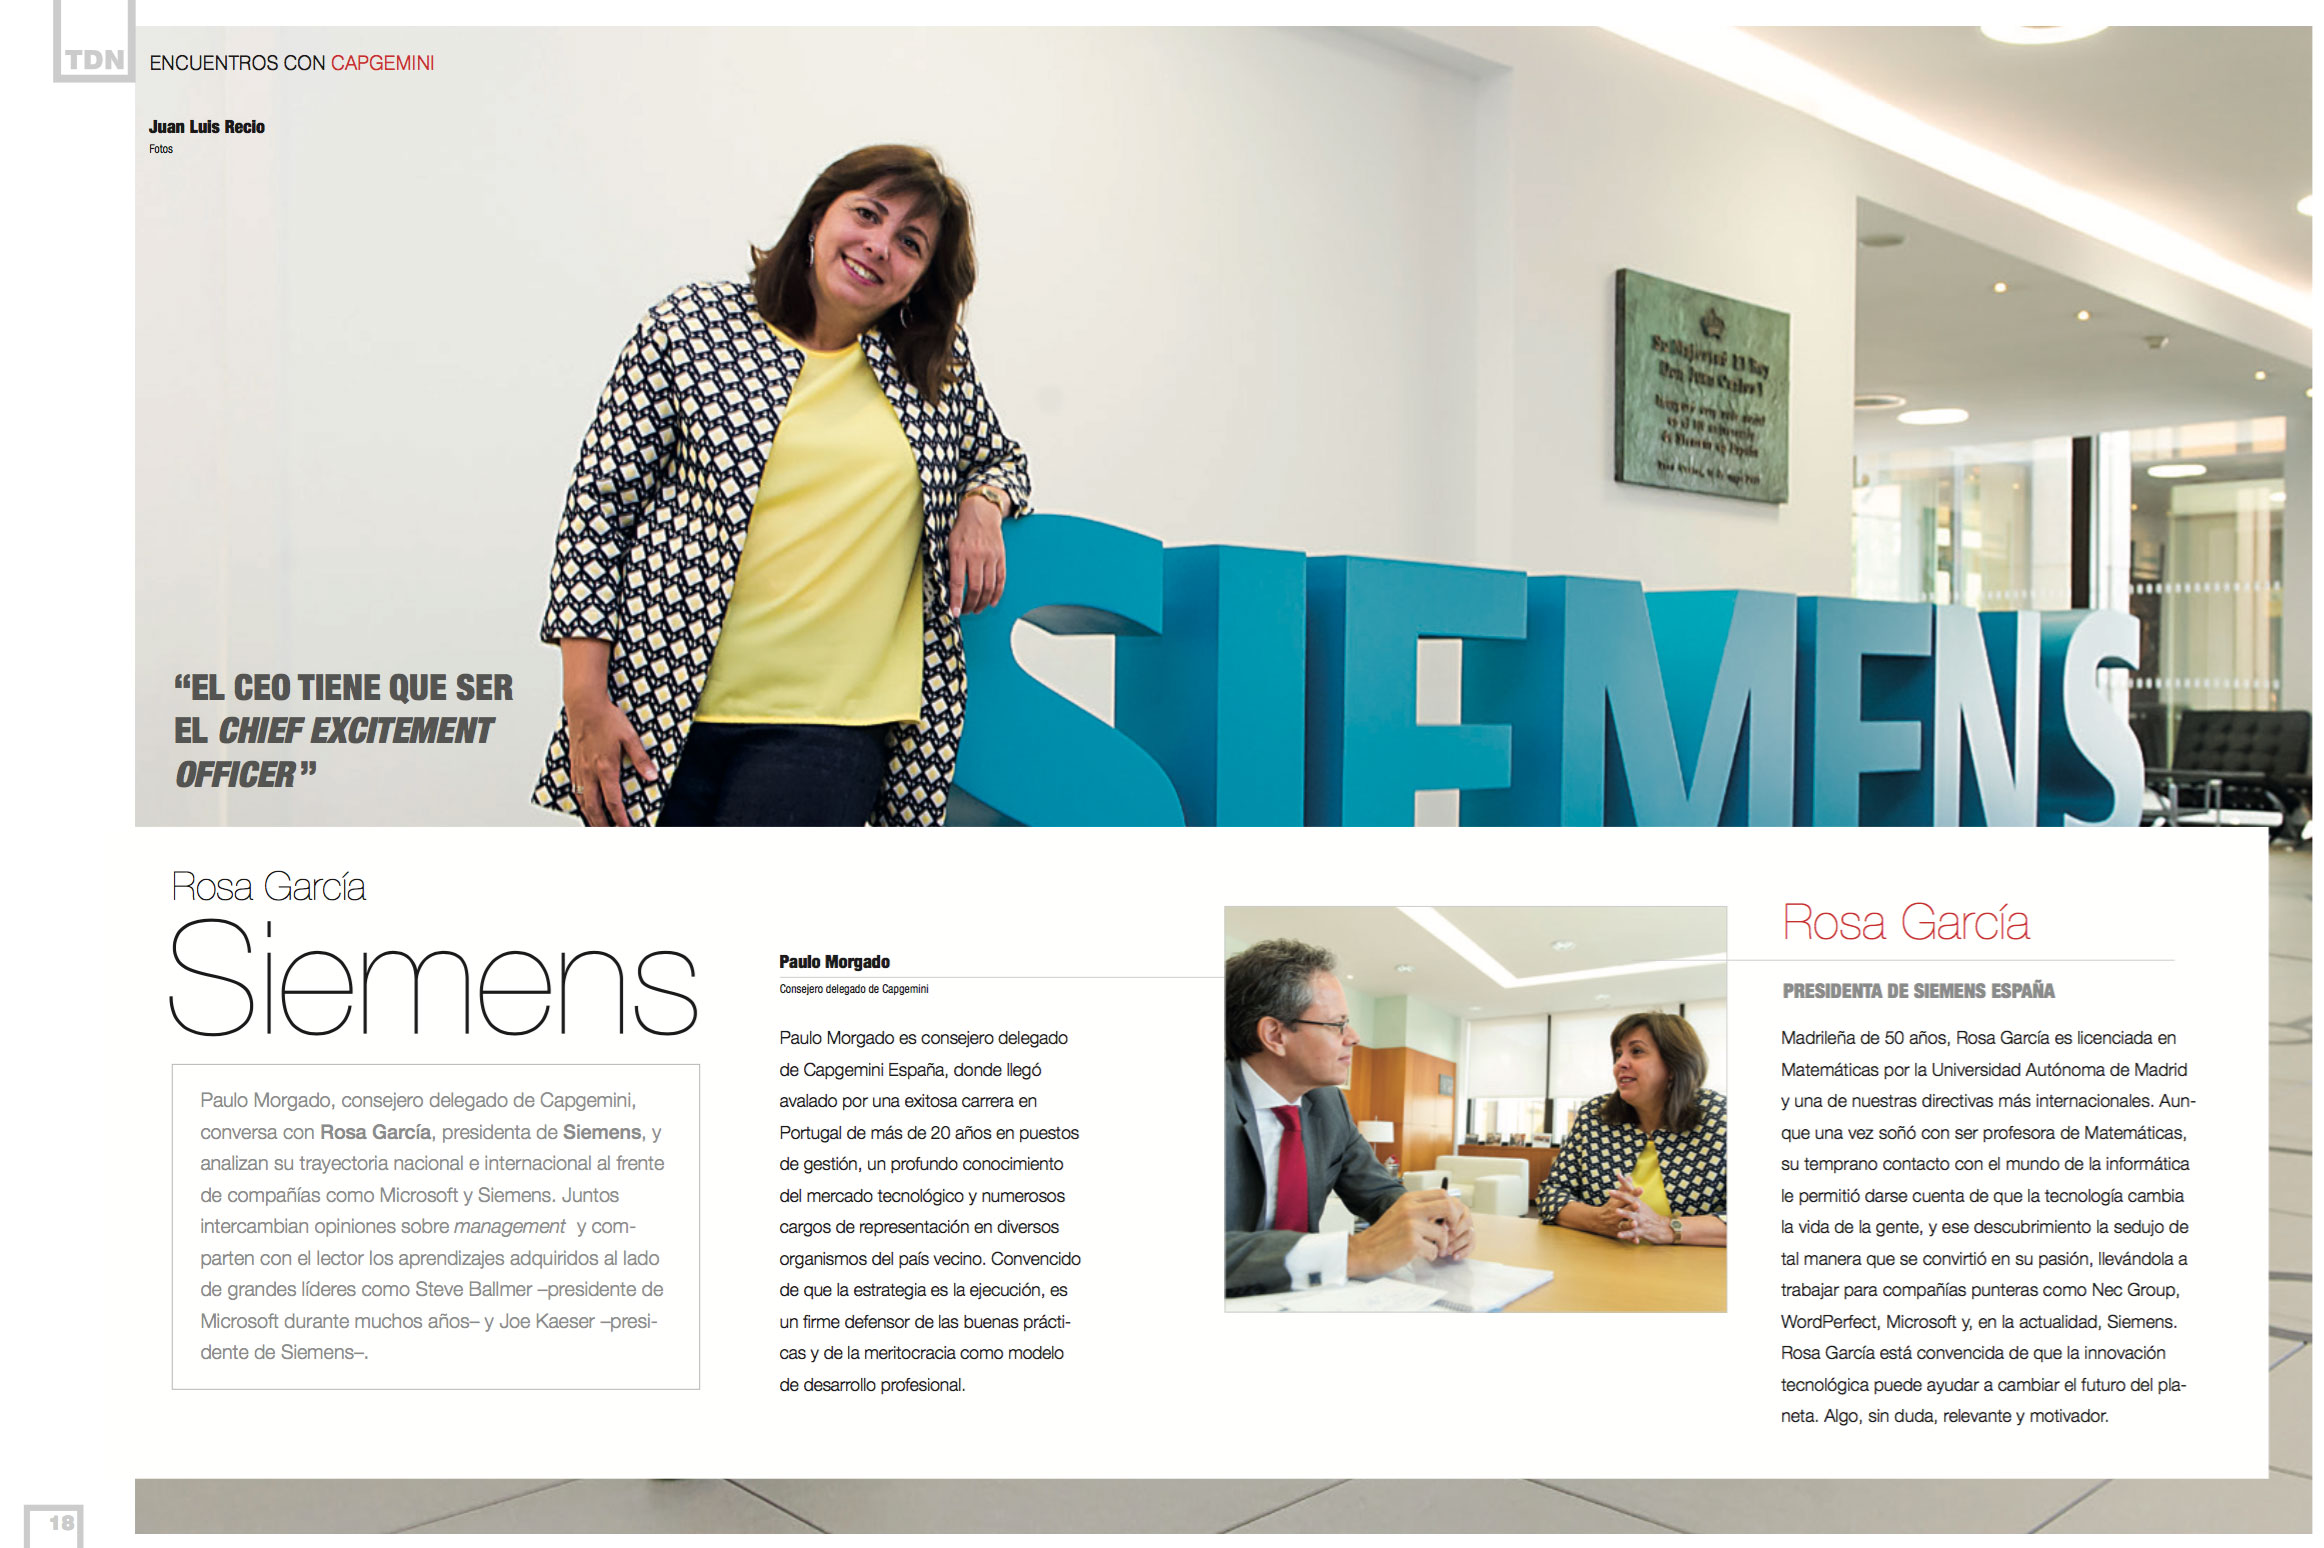 Rosa García, CEO & President at Siemens Spain